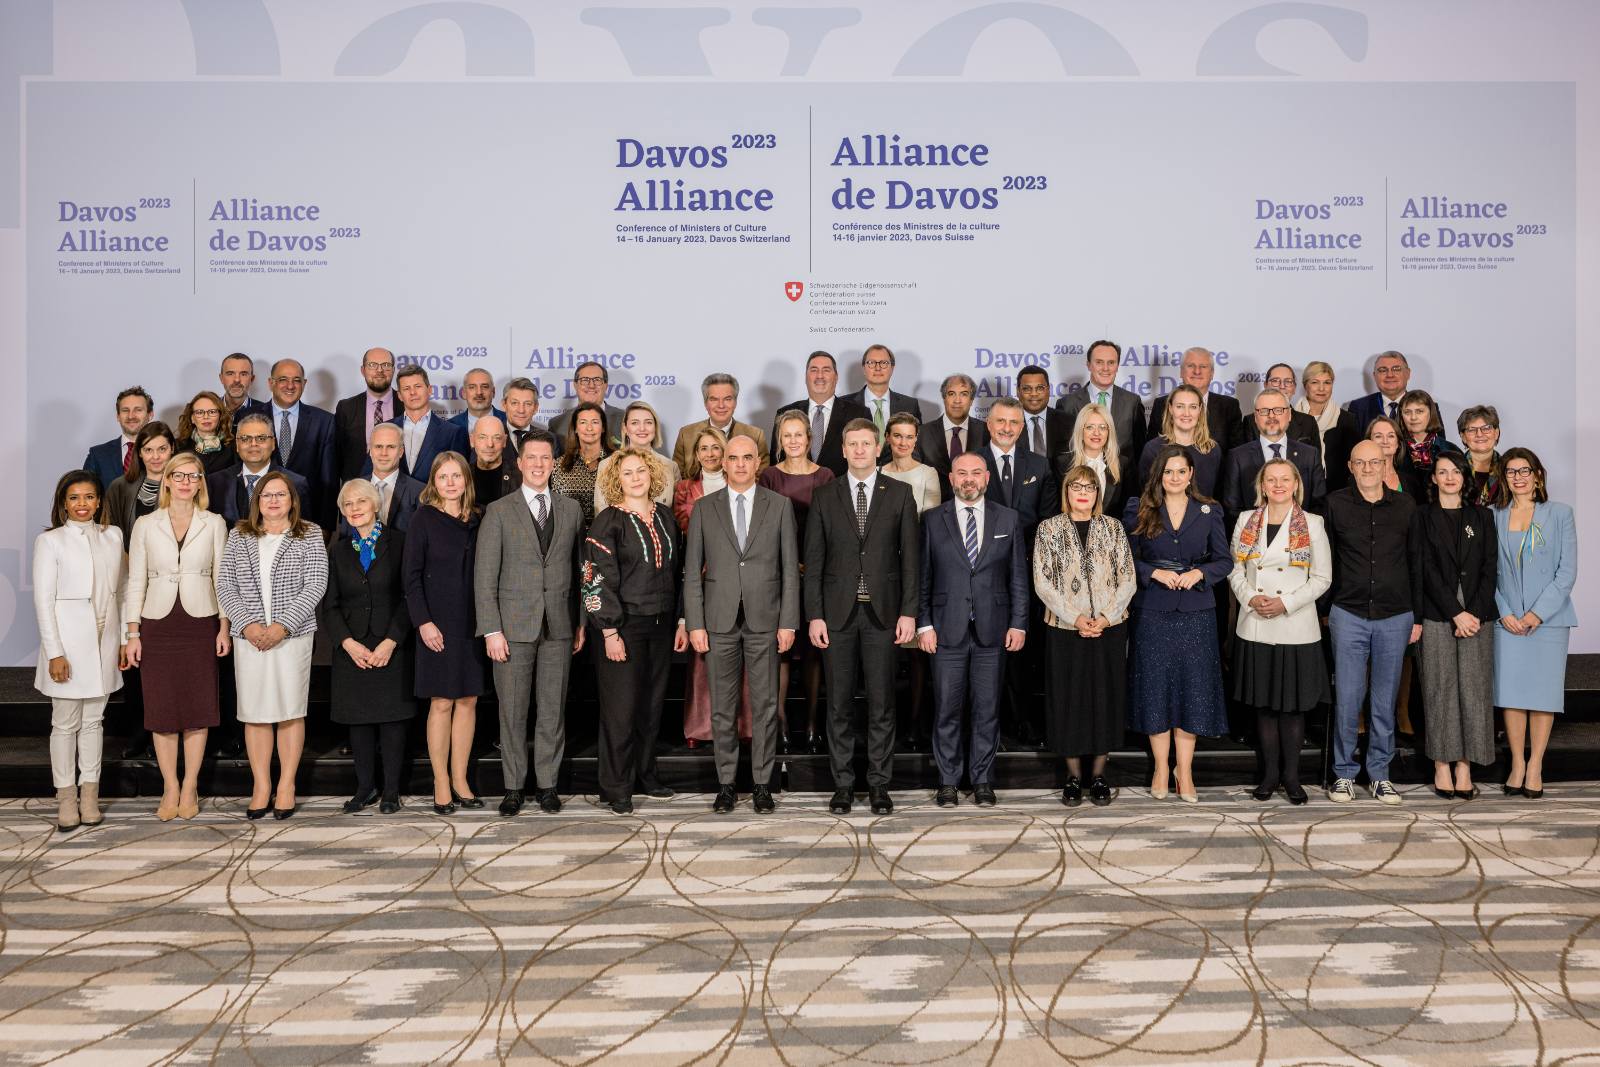 Gojković na Konferenciji ministara kulture u Davosu